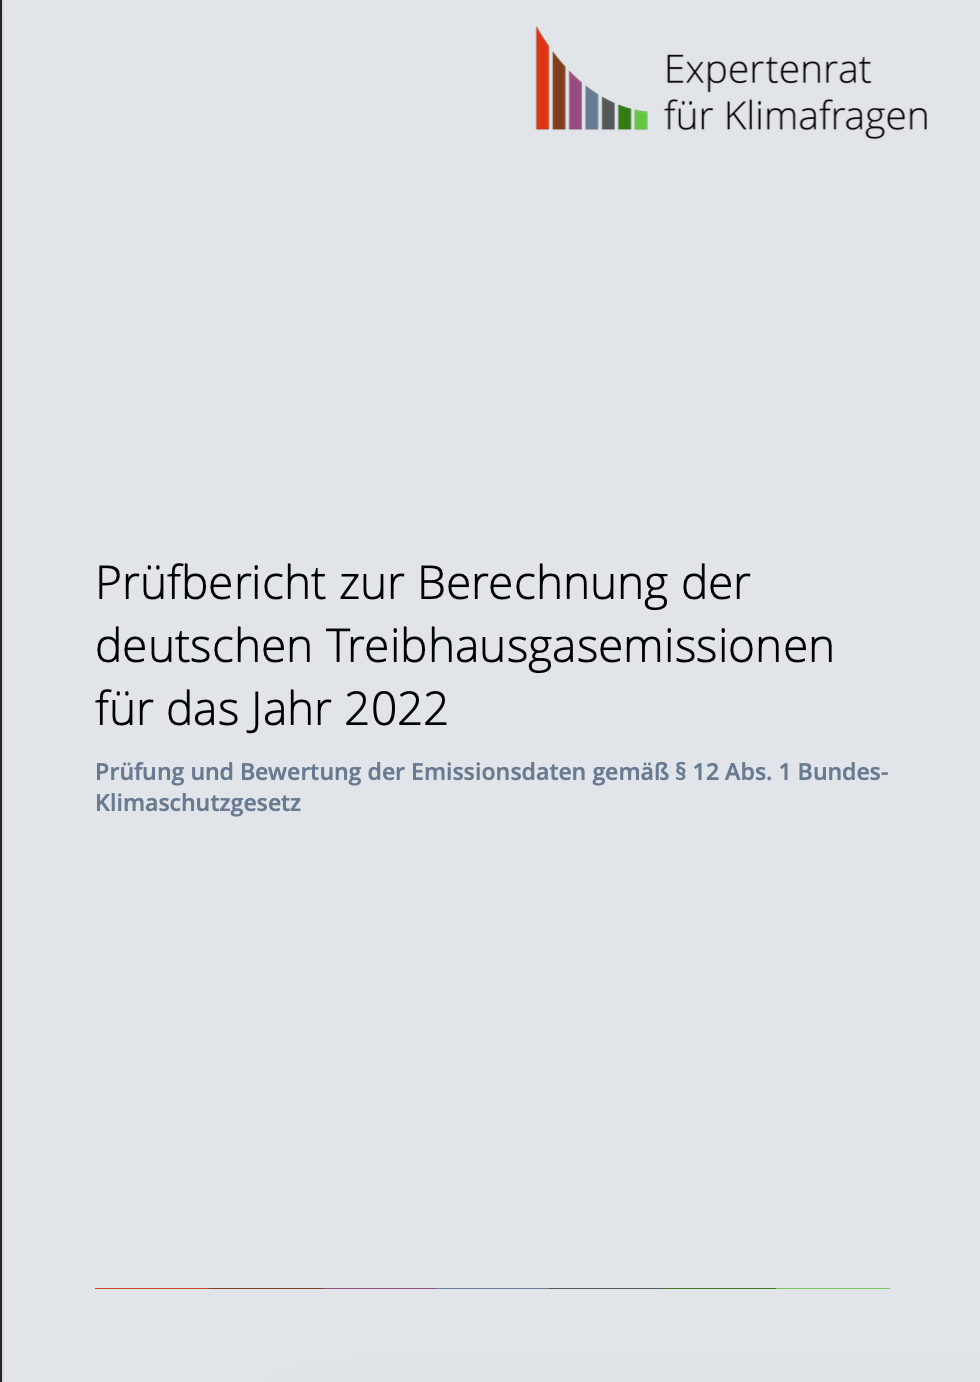 Prüfbericht zur Berechnung der deutschen Treibhausgasemissionen für das Jahr 2022